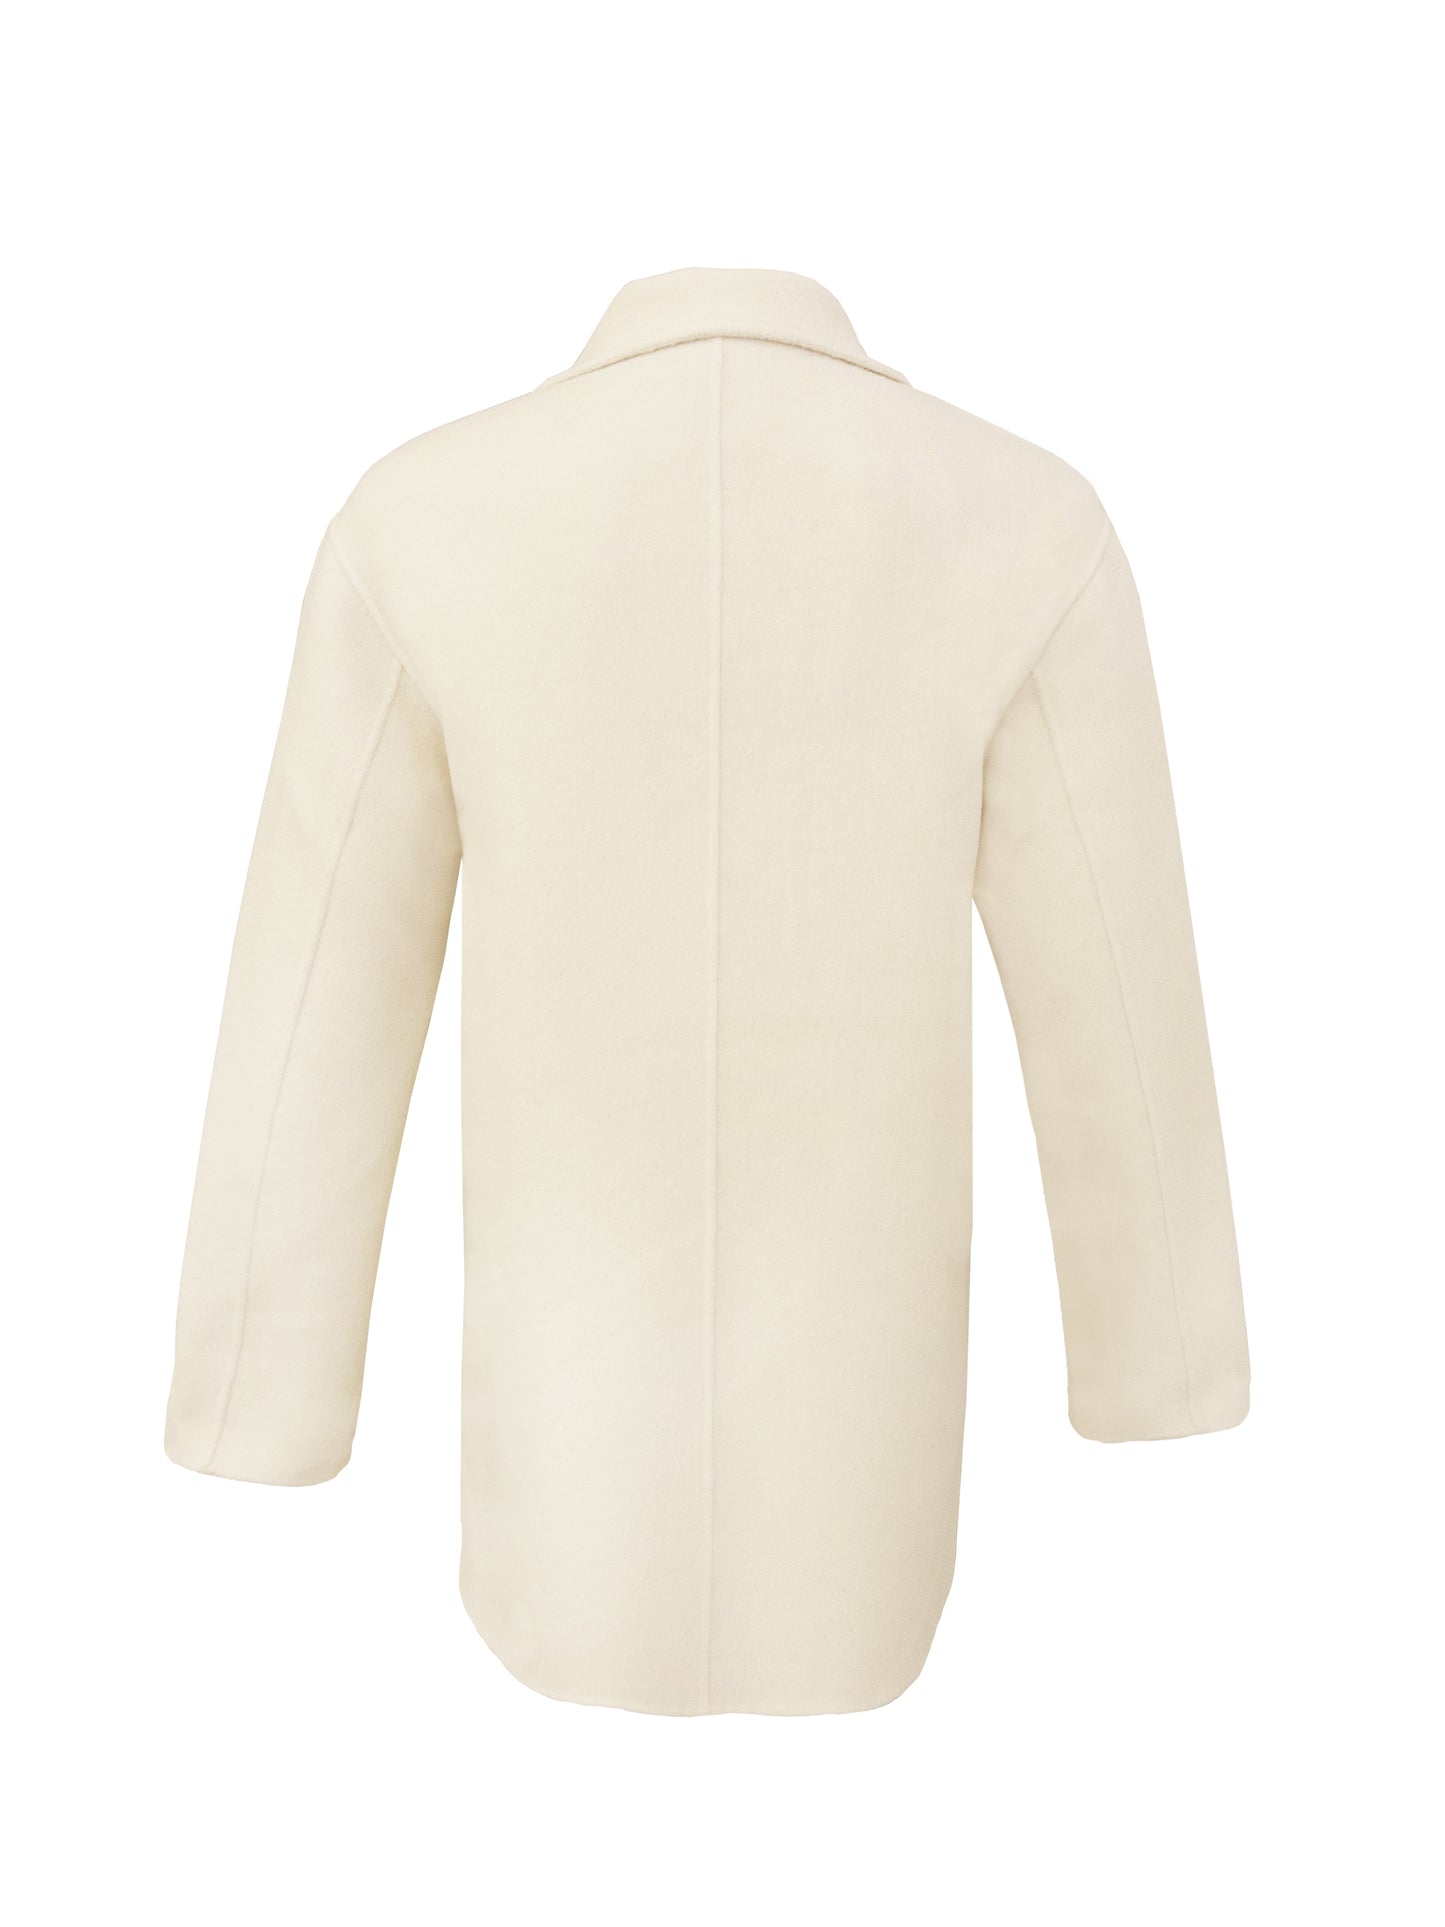 vanillefarbene Jacke ohne Knöpfe und mit einer Tasche auf der linken Seite der Brust